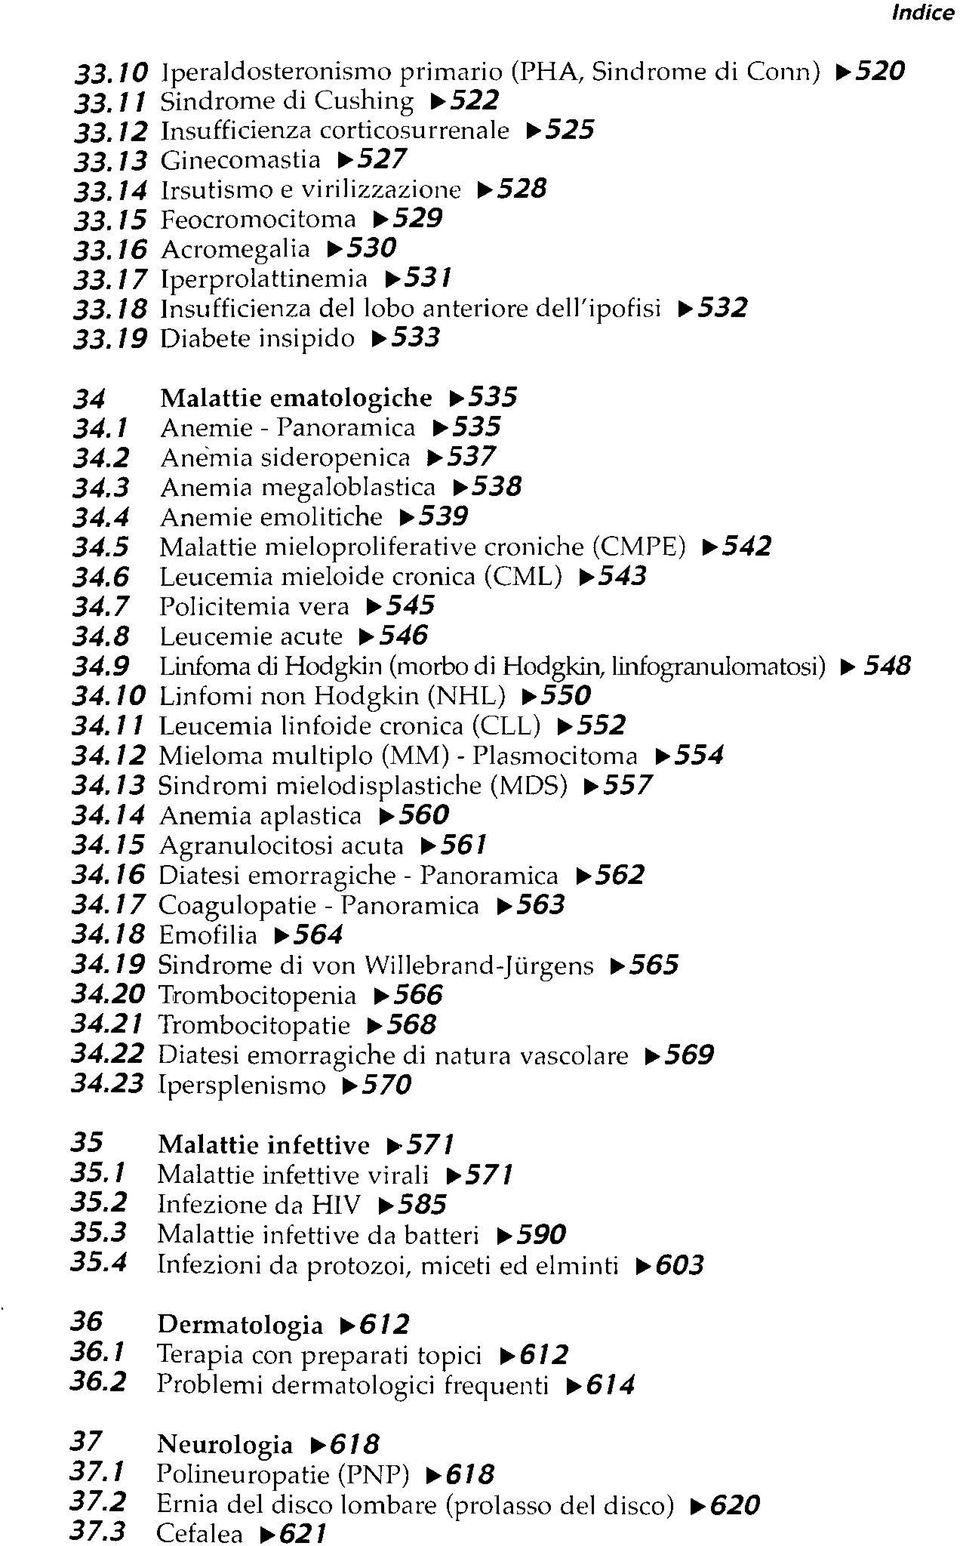 1 Anemie - Panoramica 535 34.2 Anemia sideropenica 537 34.3 Anemia megaloblastica 538 34.4 Anemie emolitiche 539 34.5 Malattie mieloproliferative croniche (CMPE) 542 34.